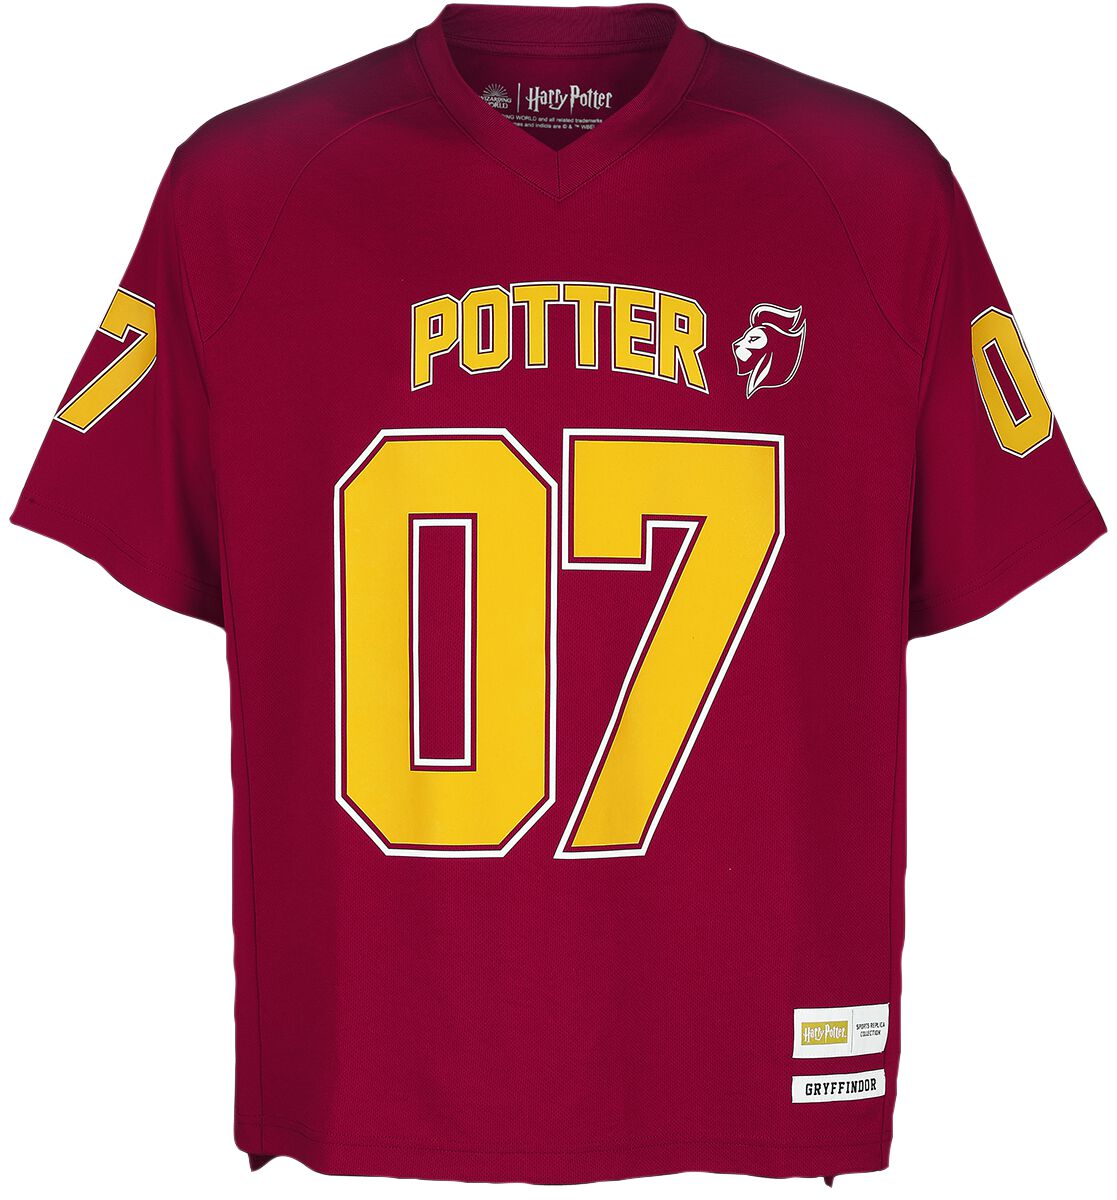 Potter - Gryffindor | Harry Potter Jersey | EMP